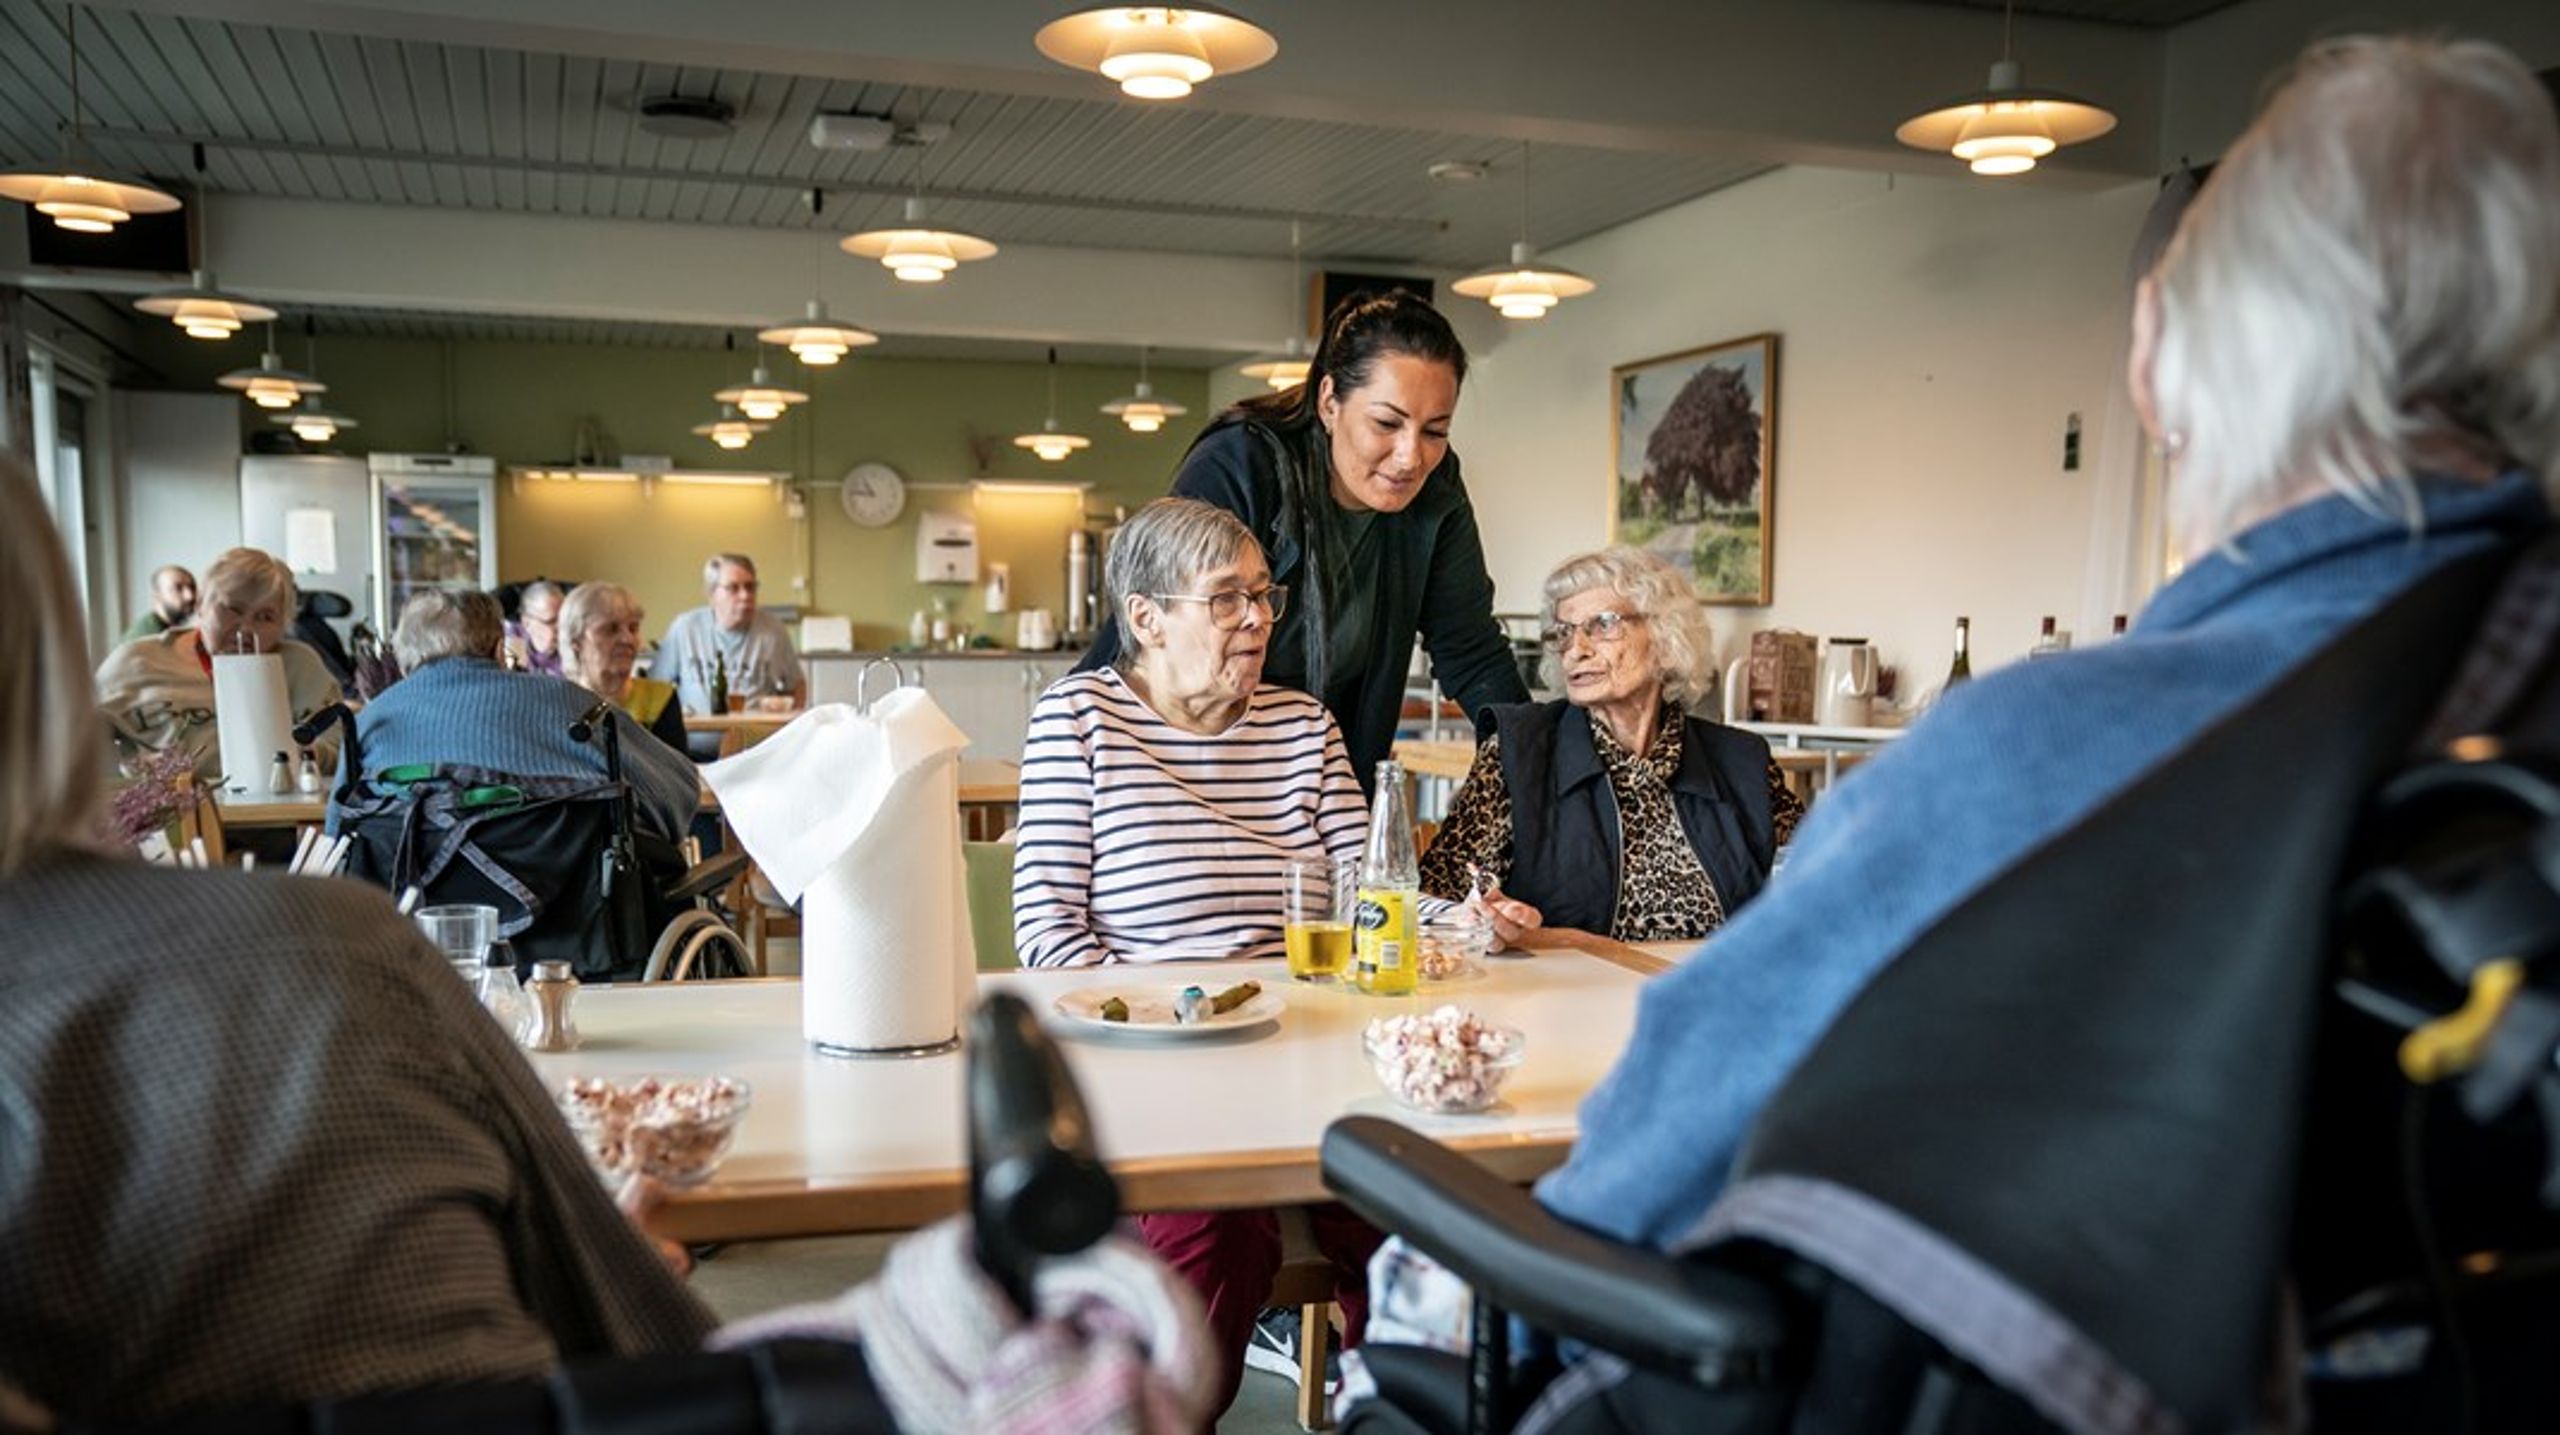 Plejehjemsråd skal være et rum, hvor beboere, pårørende og lokale ressourcepersoner er en central støtte for plejehjemslederen, skriver Inger Møller Hansen.